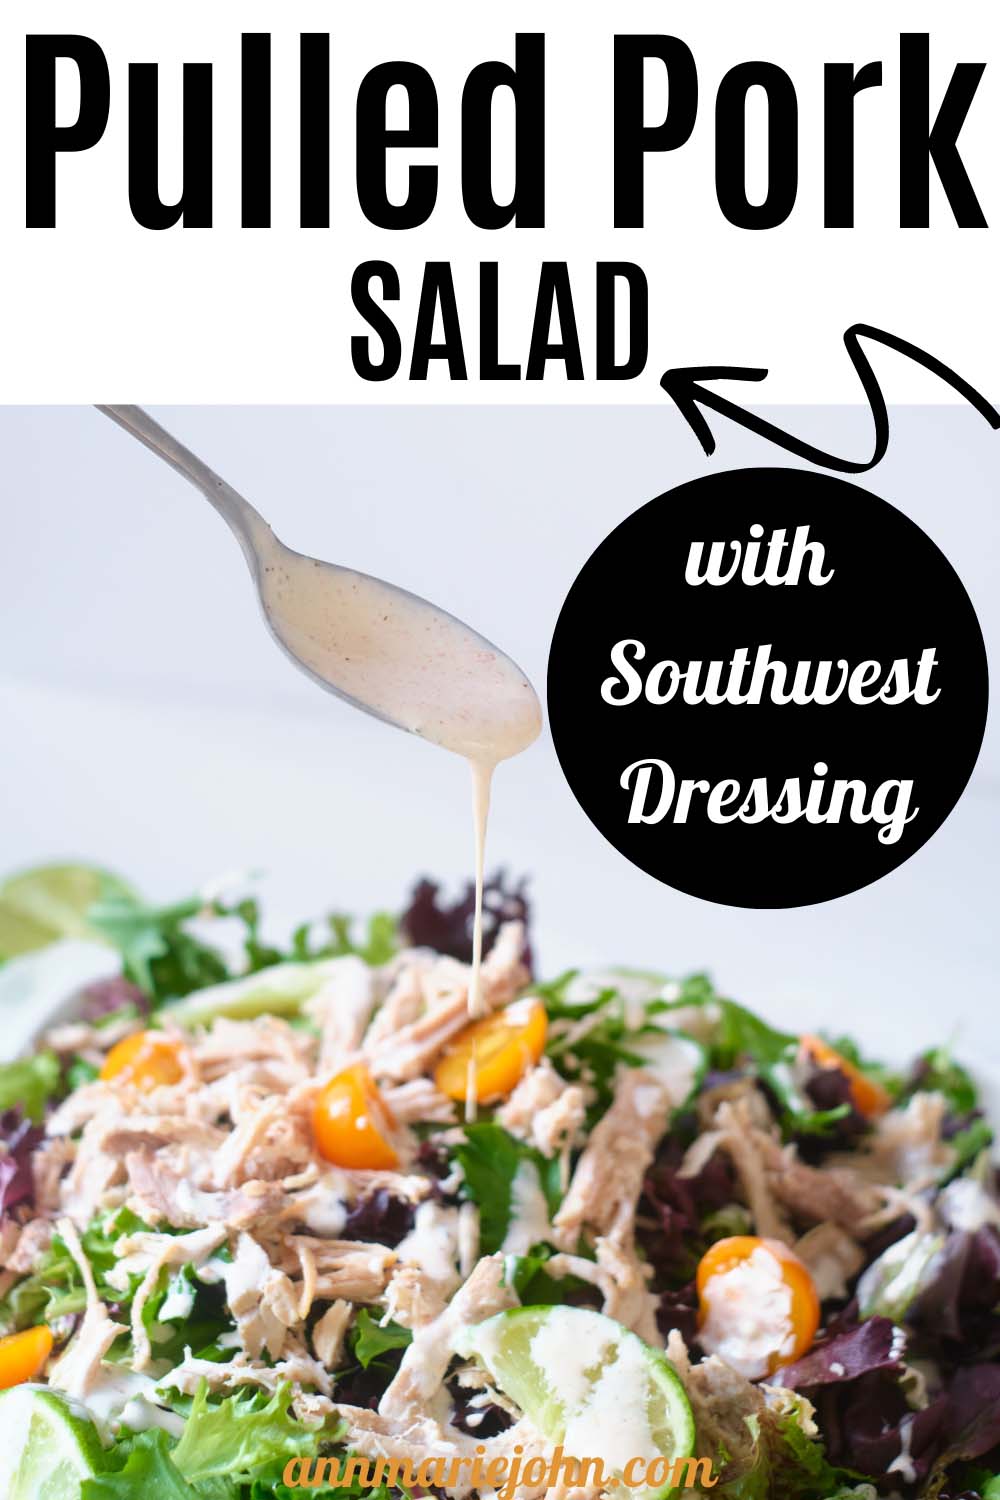 Pulled Pork Salad with Southwest Dressing